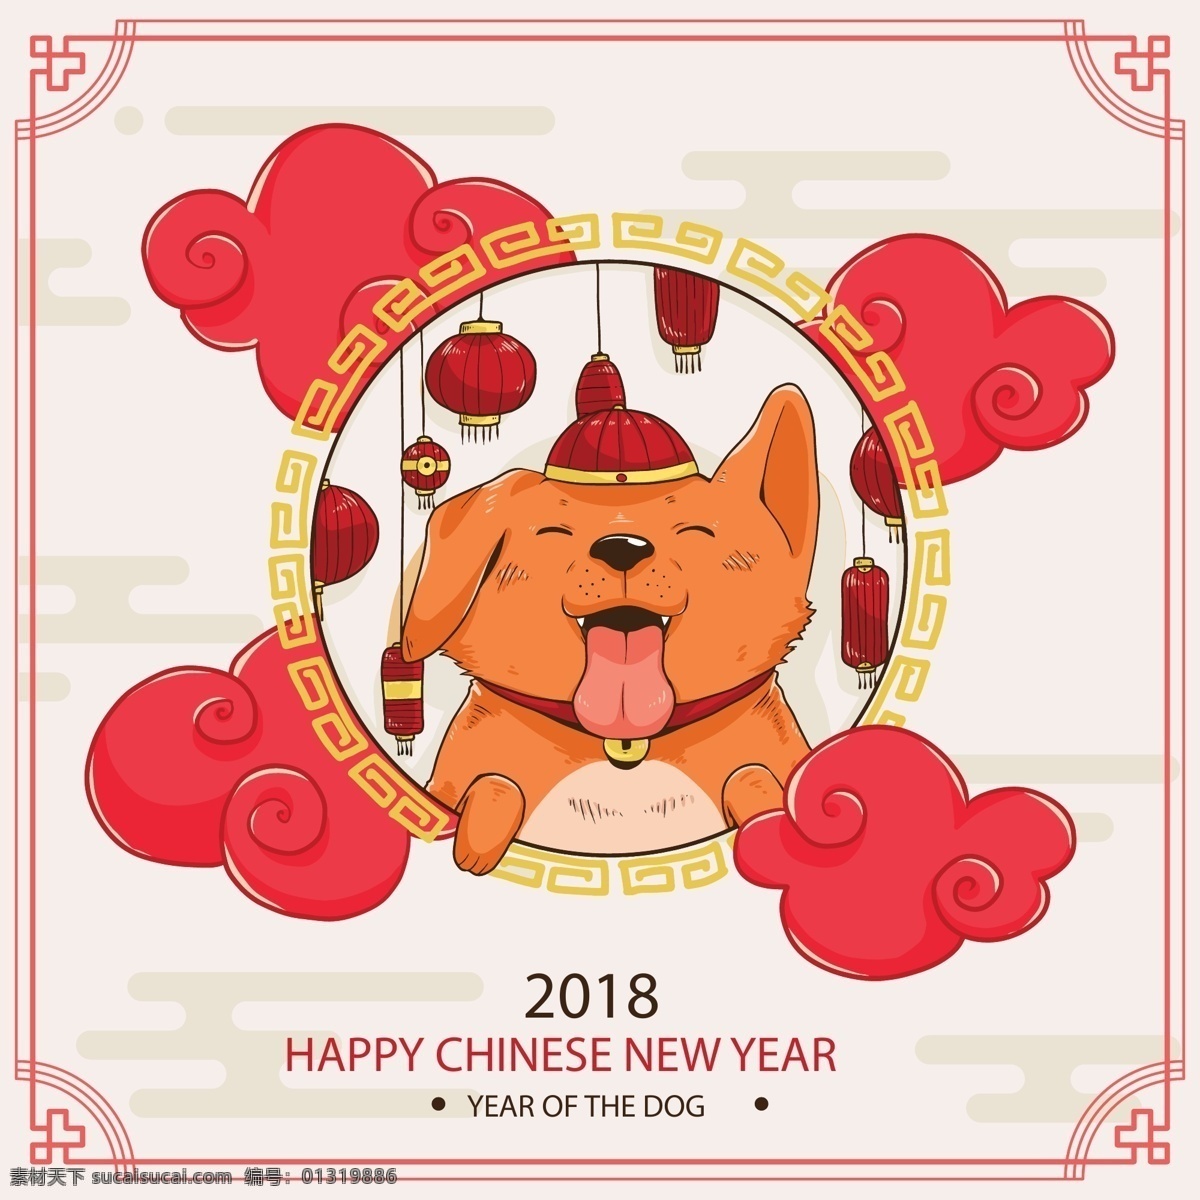 边框 表情 动物 搞笑 狗 红色 卡通 可爱宠物 脸 舌头 新年 语言 手绘 中国 元素